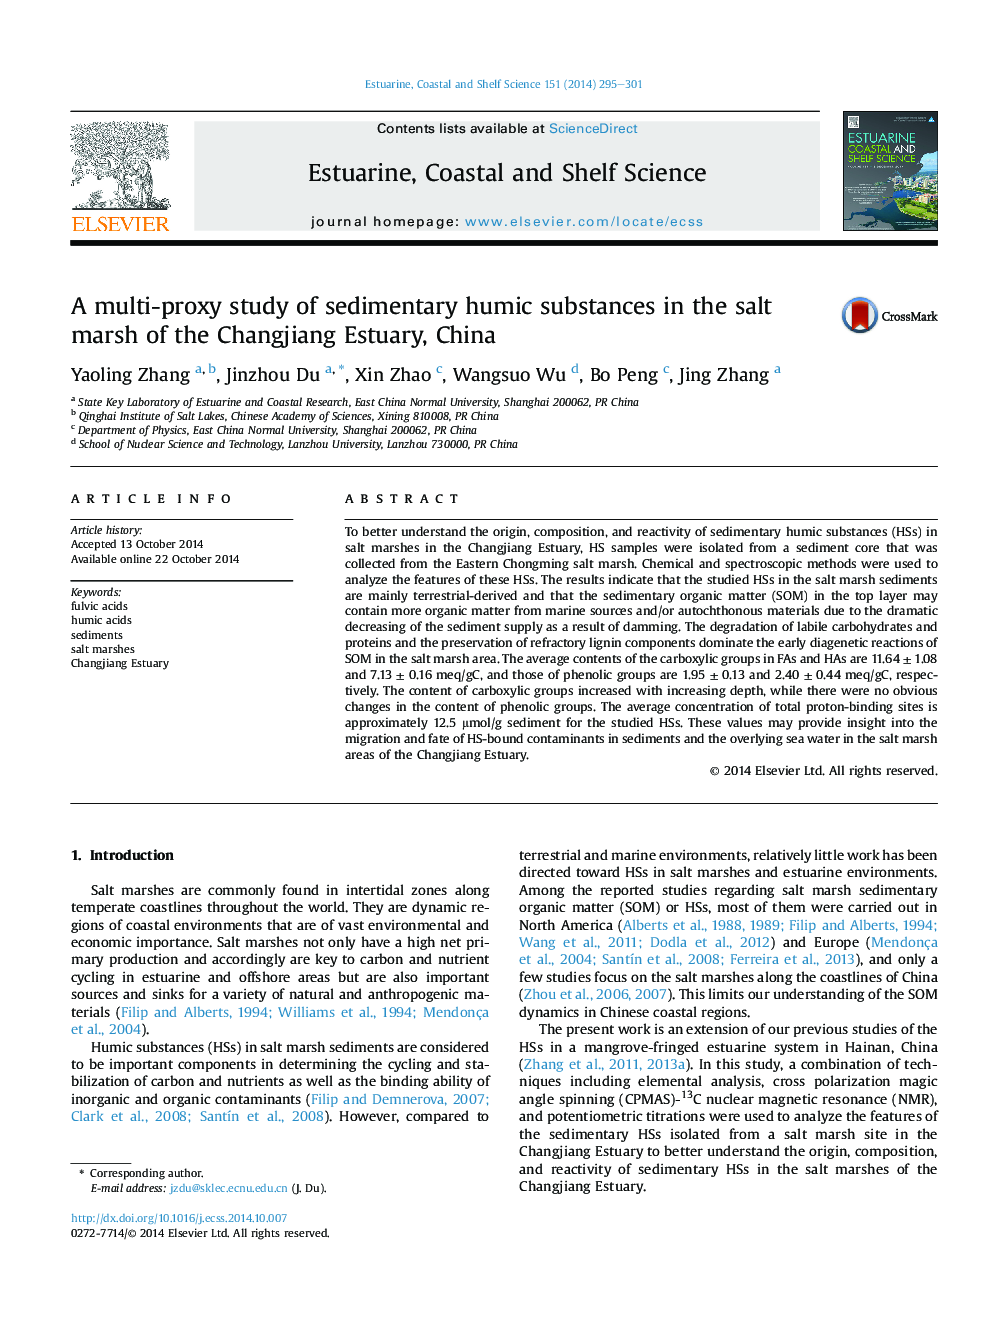 بررسی چند پروکسی از مواد هیدروژنی رسوبی در نمک دریای رودخانه چانگ لیانگ، چین 